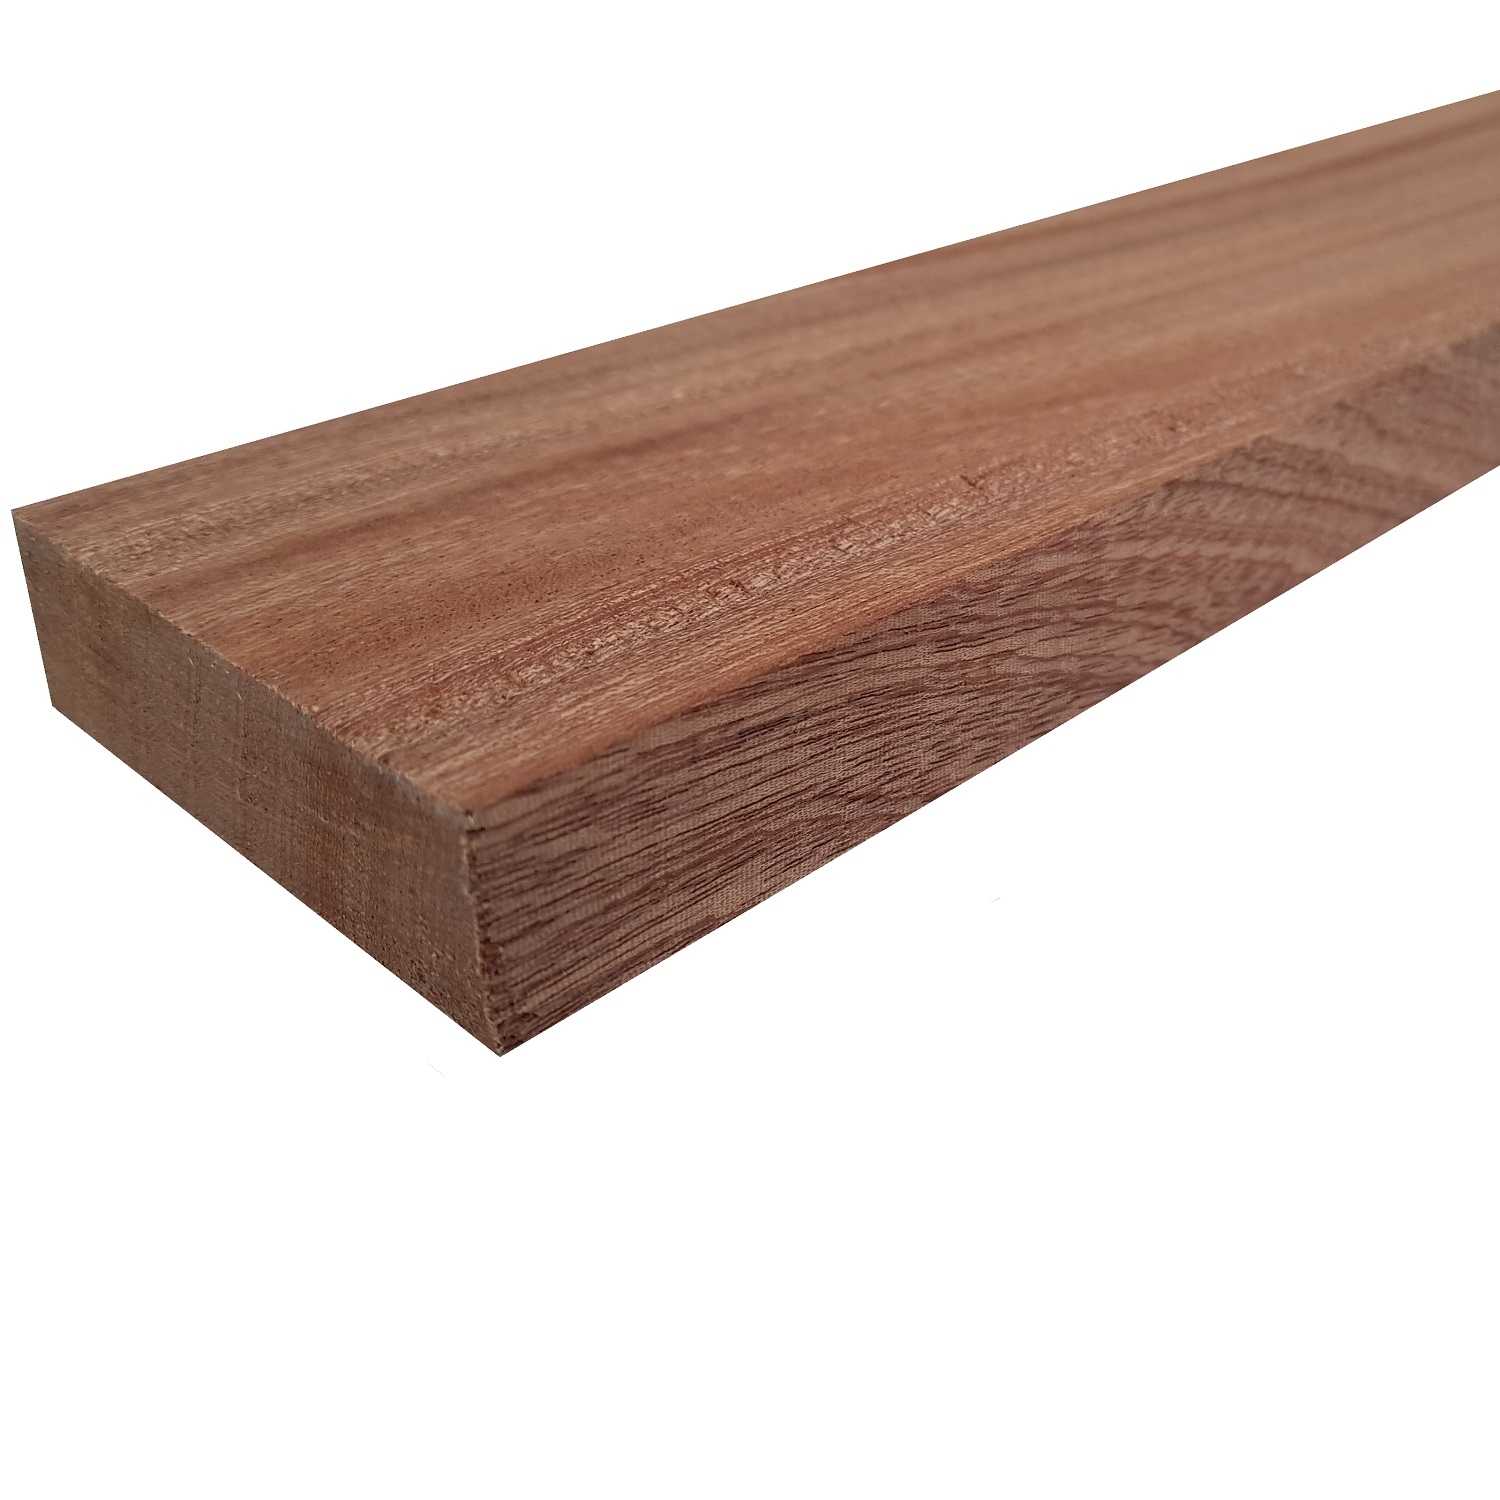 Tavola legno di Mogano Refilato Piallato mm 21 x 200 x 1250 Sipo